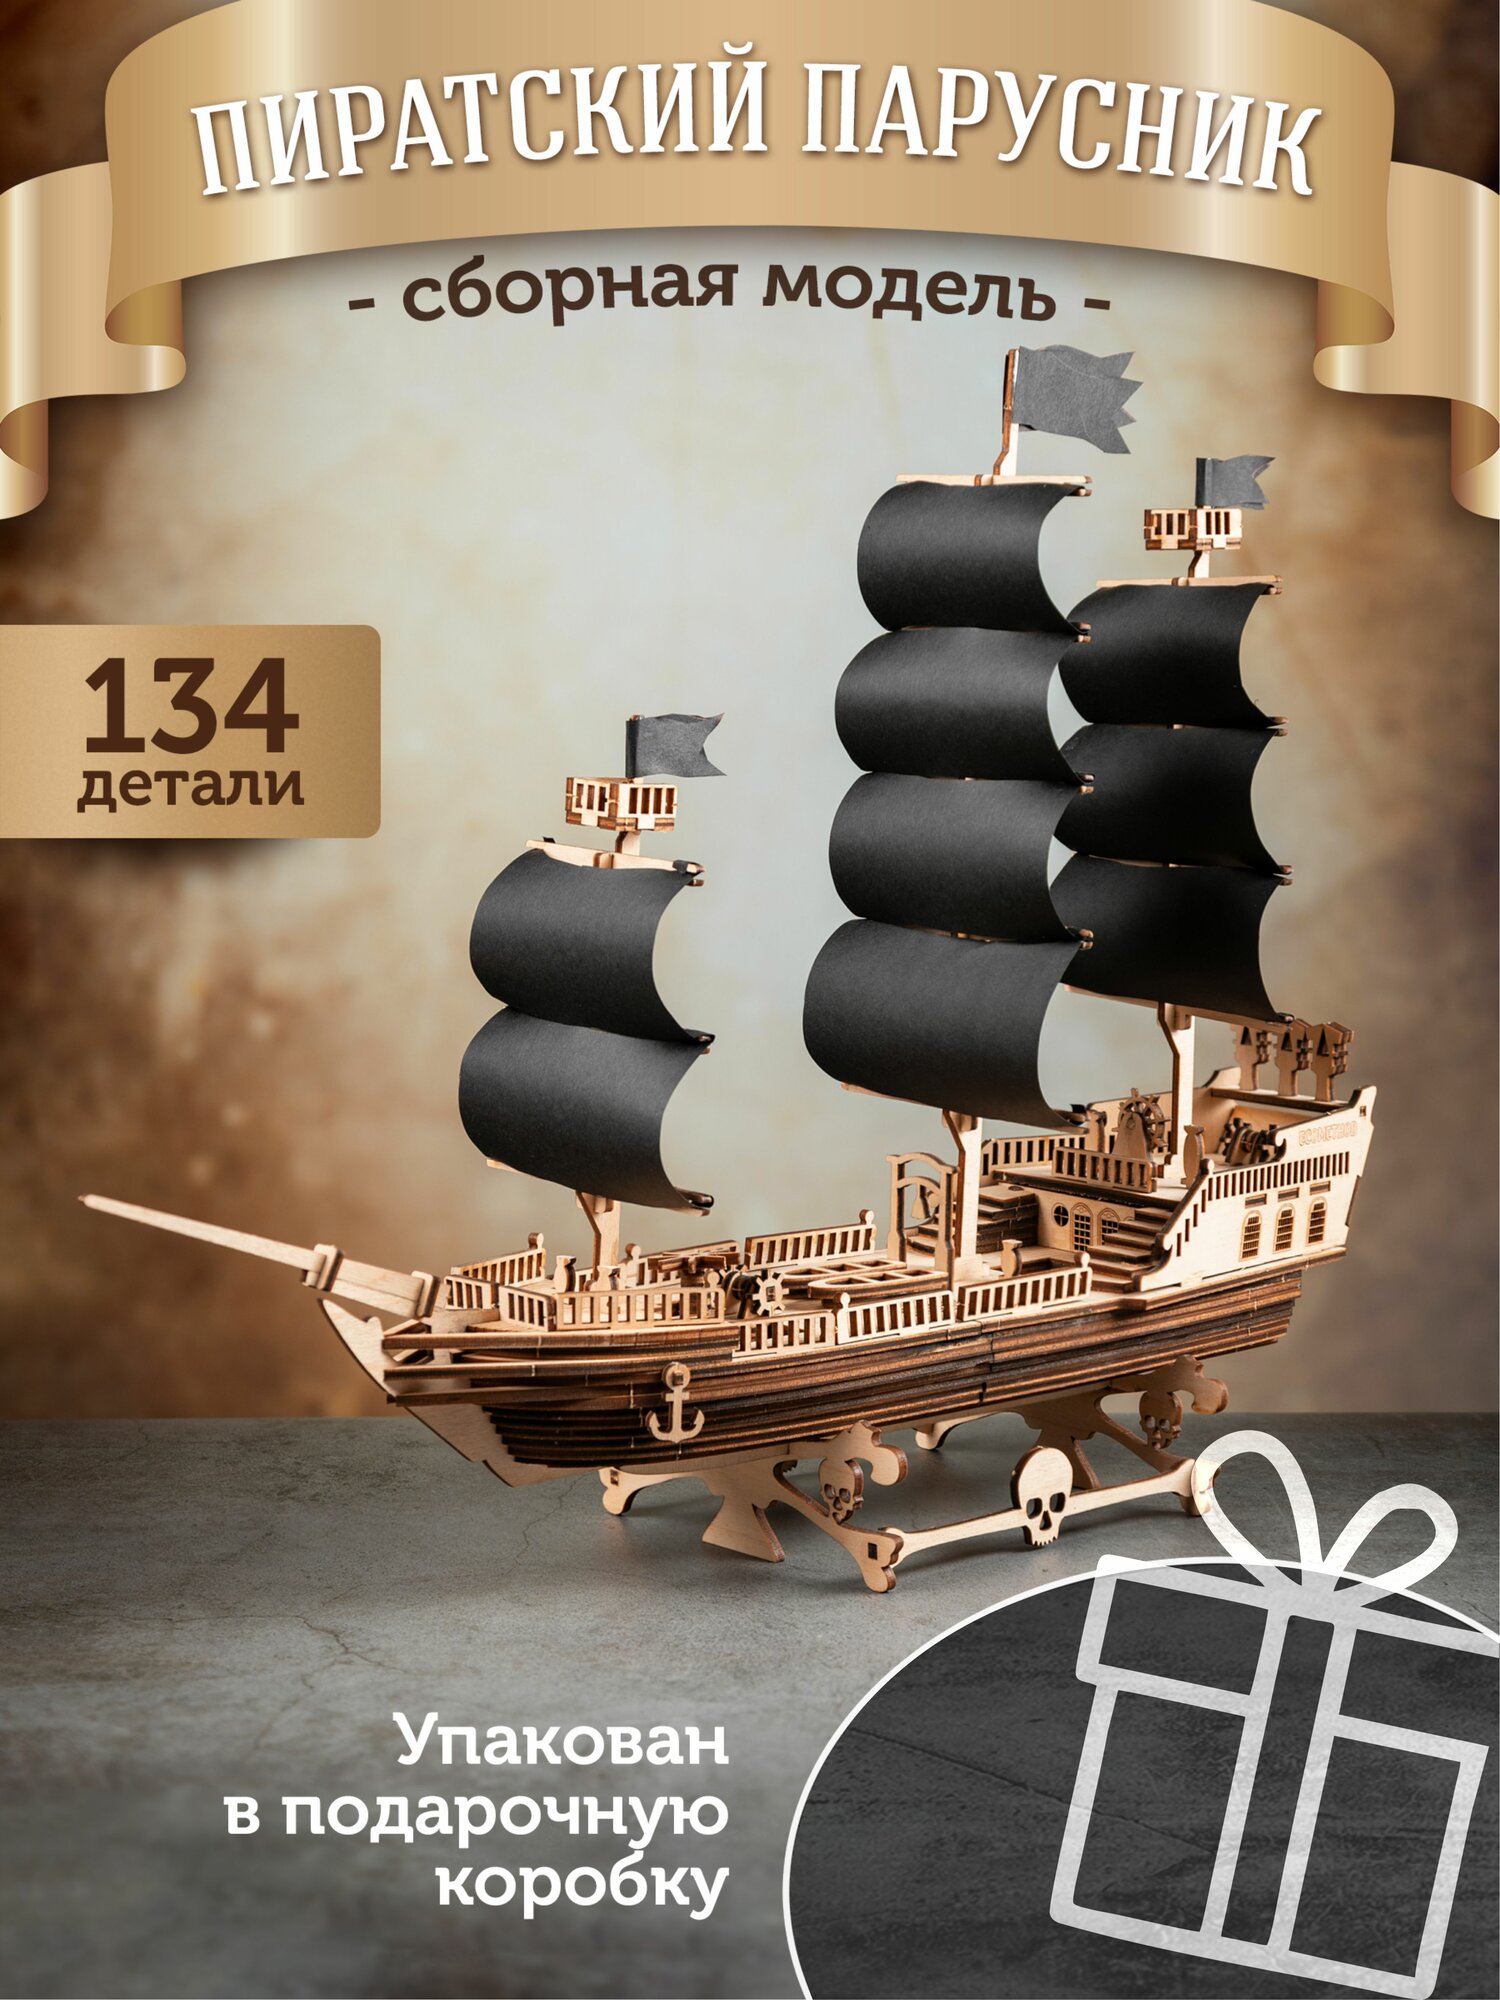 Сборная модель корабля деревянный конструктор черная жемчужина